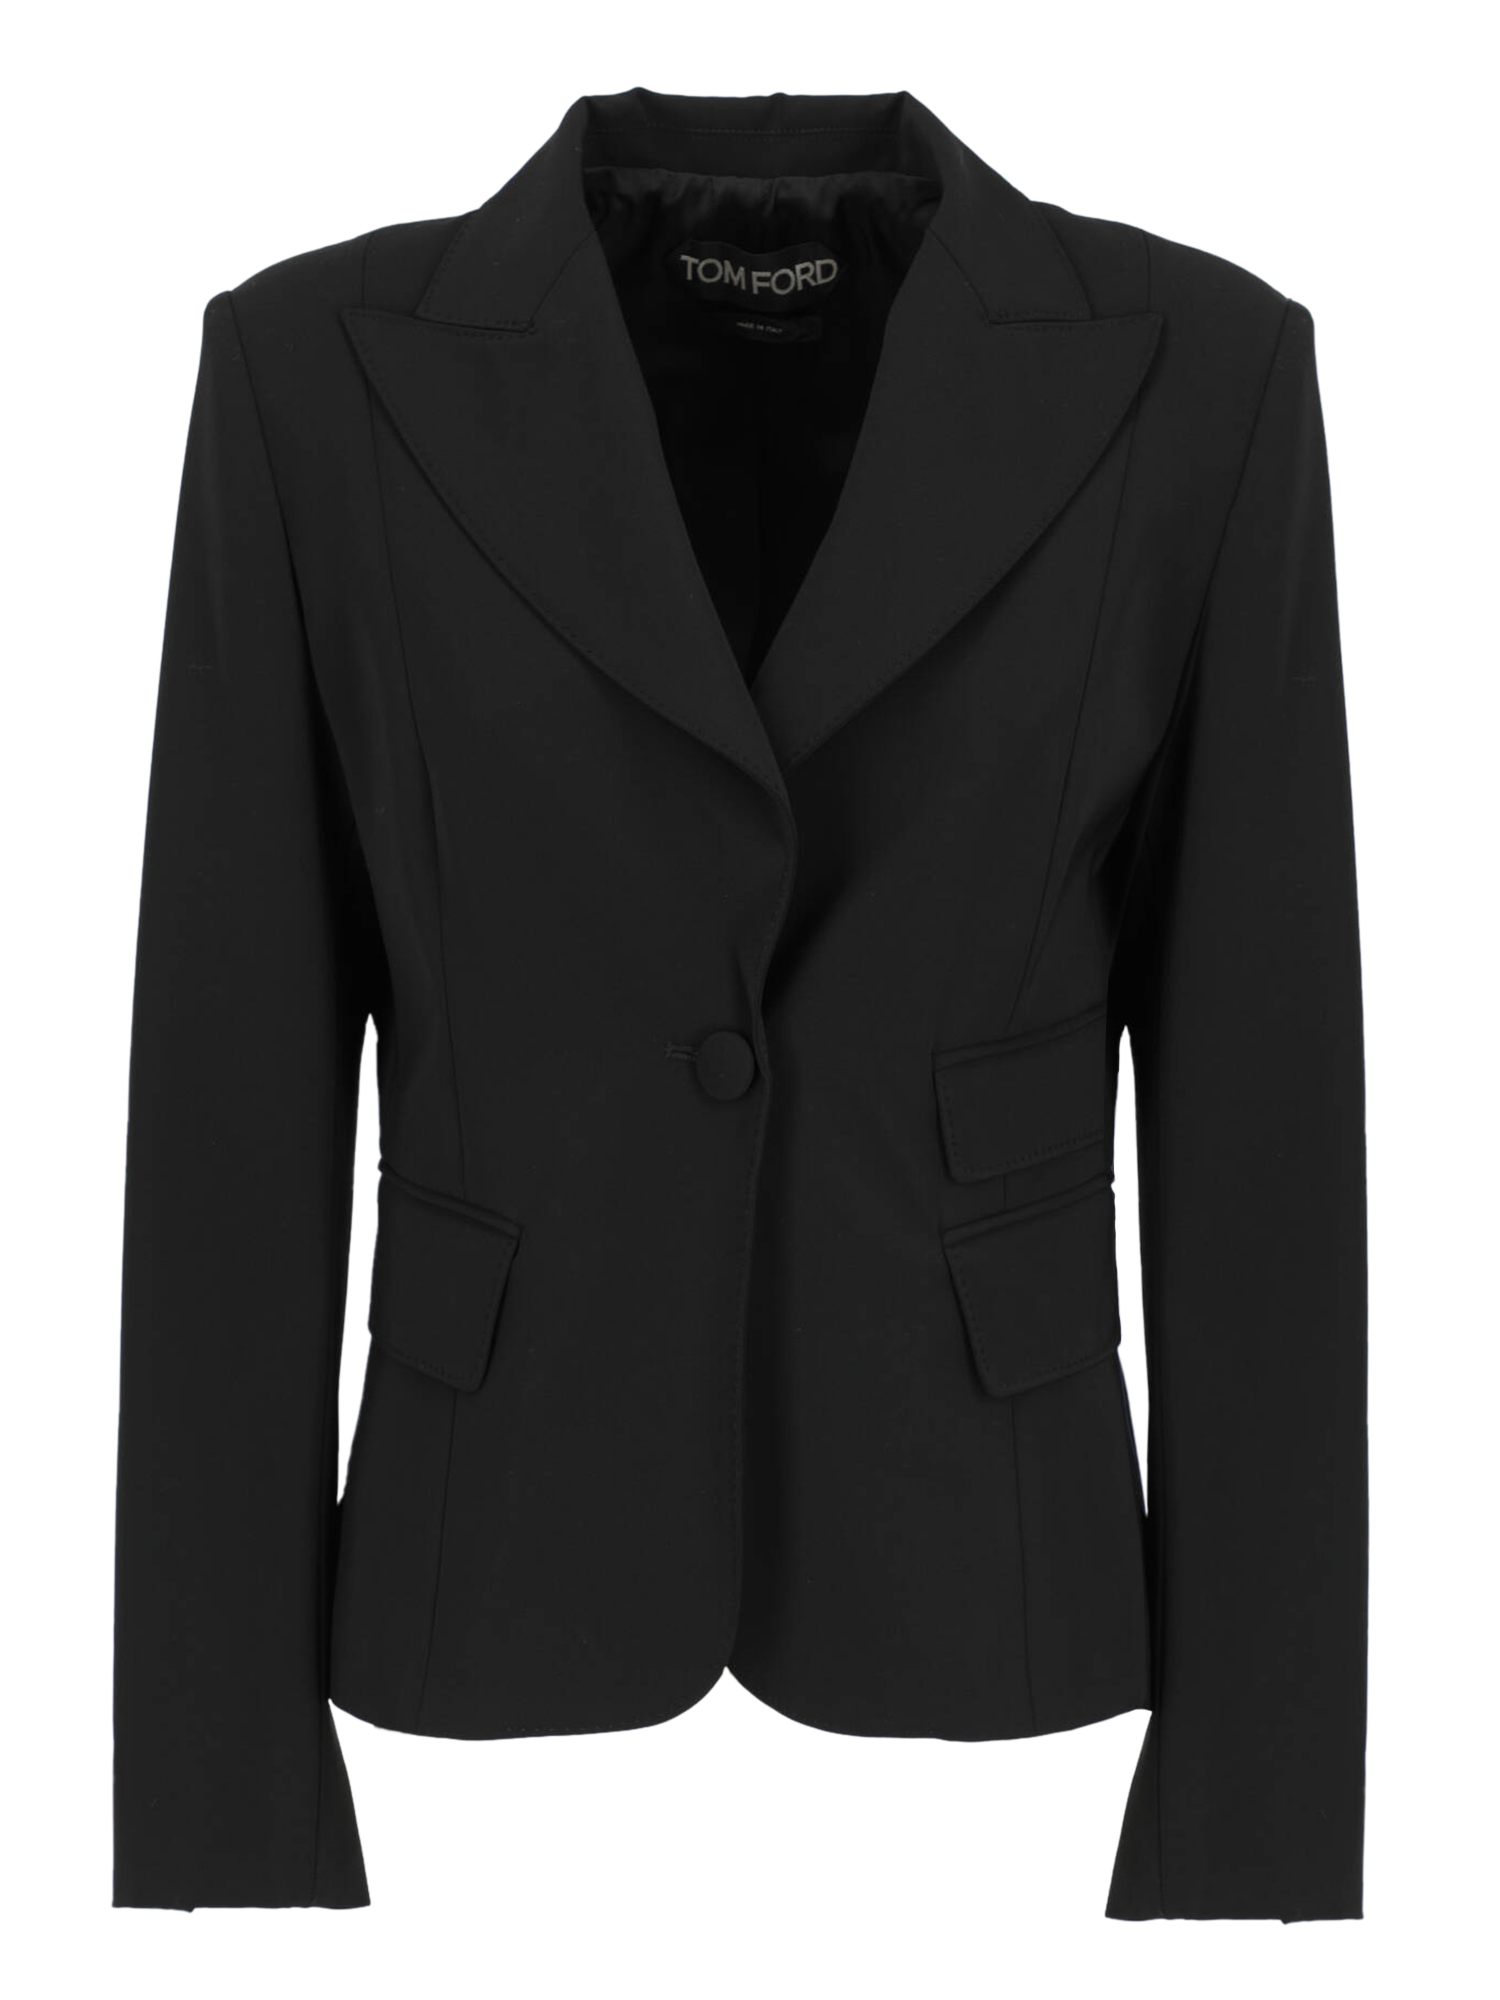 Vestes Pour Femme - Tom Ford - En Synthetic Fibers Black - Taille:  -